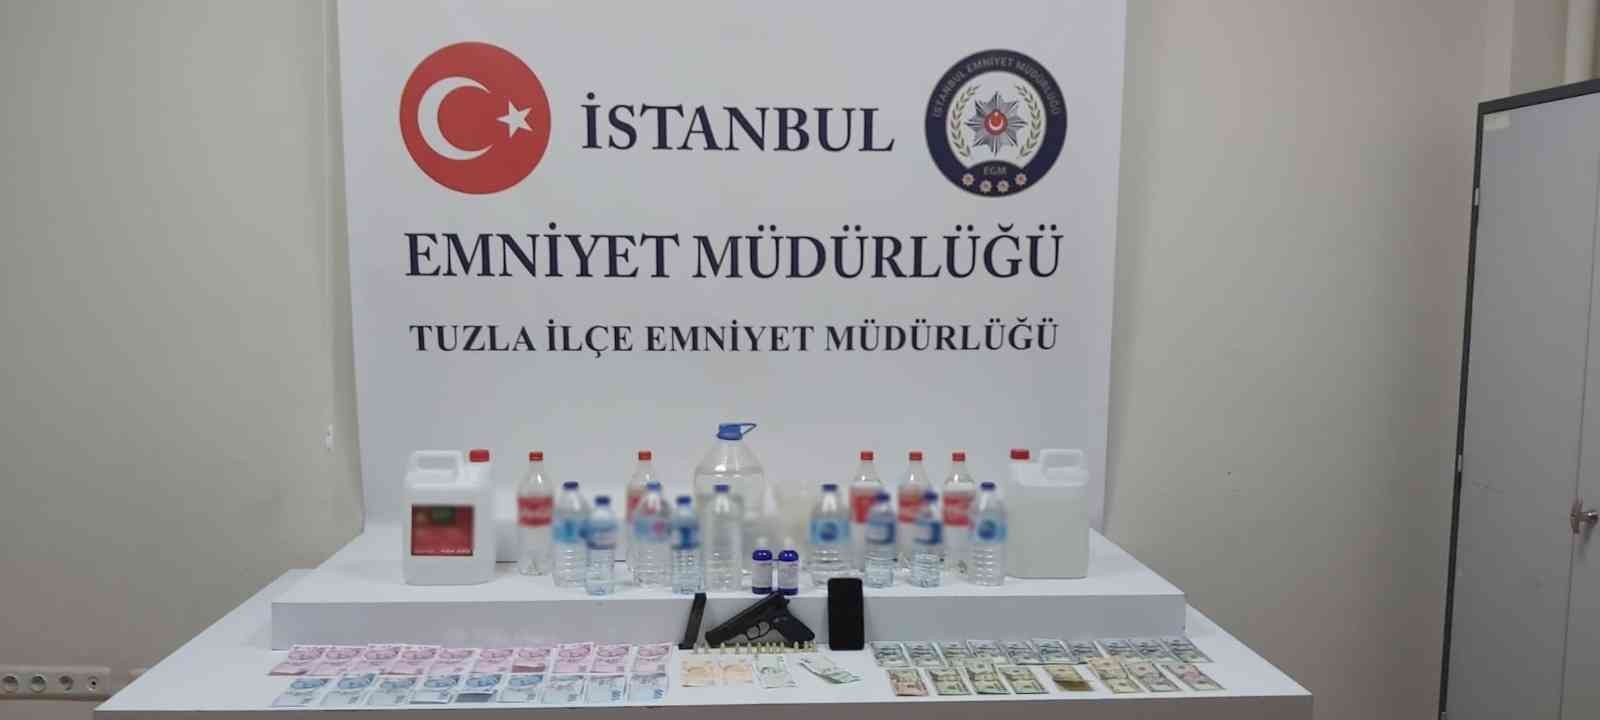 Tuzla’da sahte alkol imalatı ve satışının yapıldığı iş yerine operasyon #istanbul